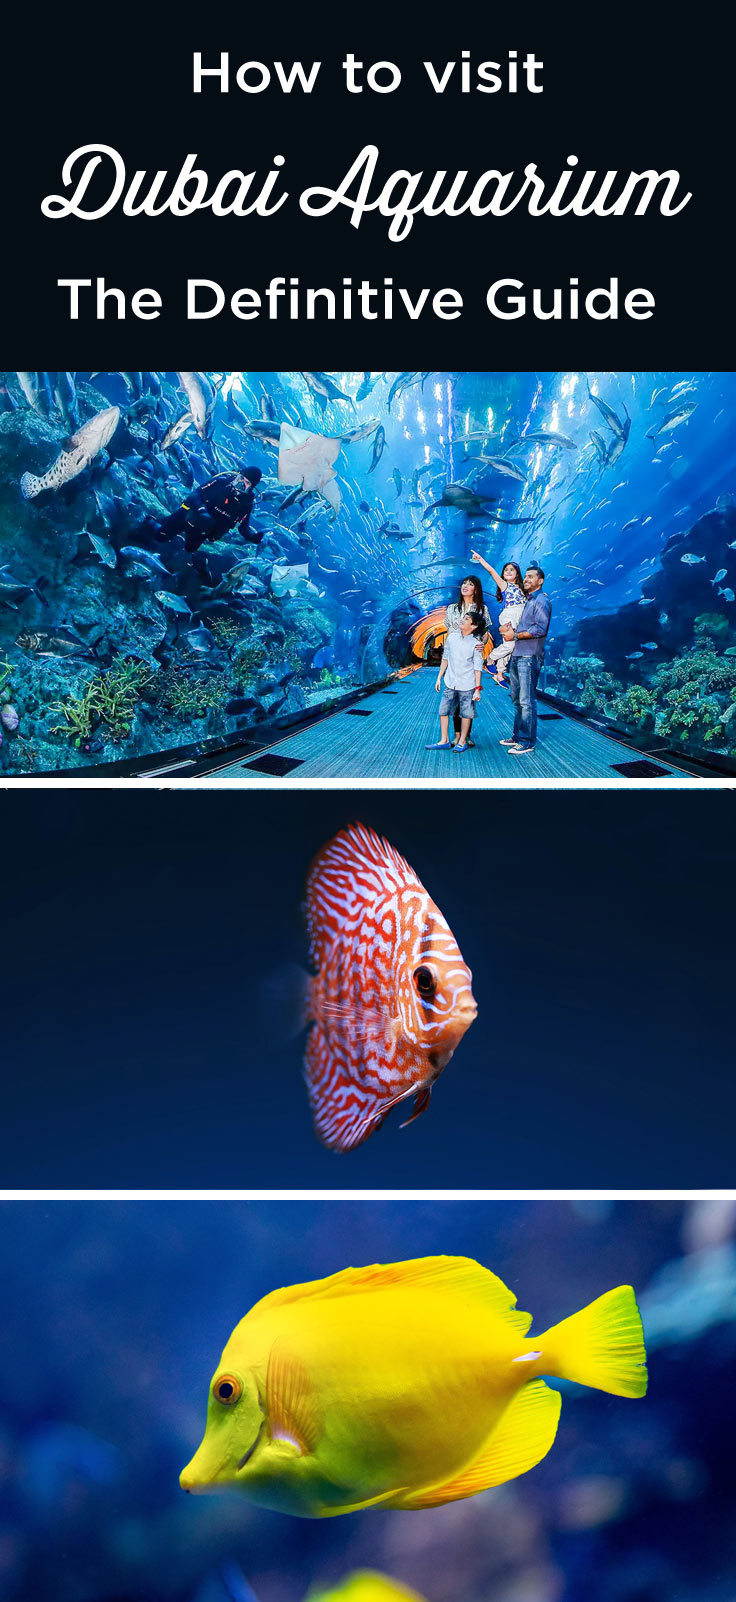 Visit Dubai Aquarium